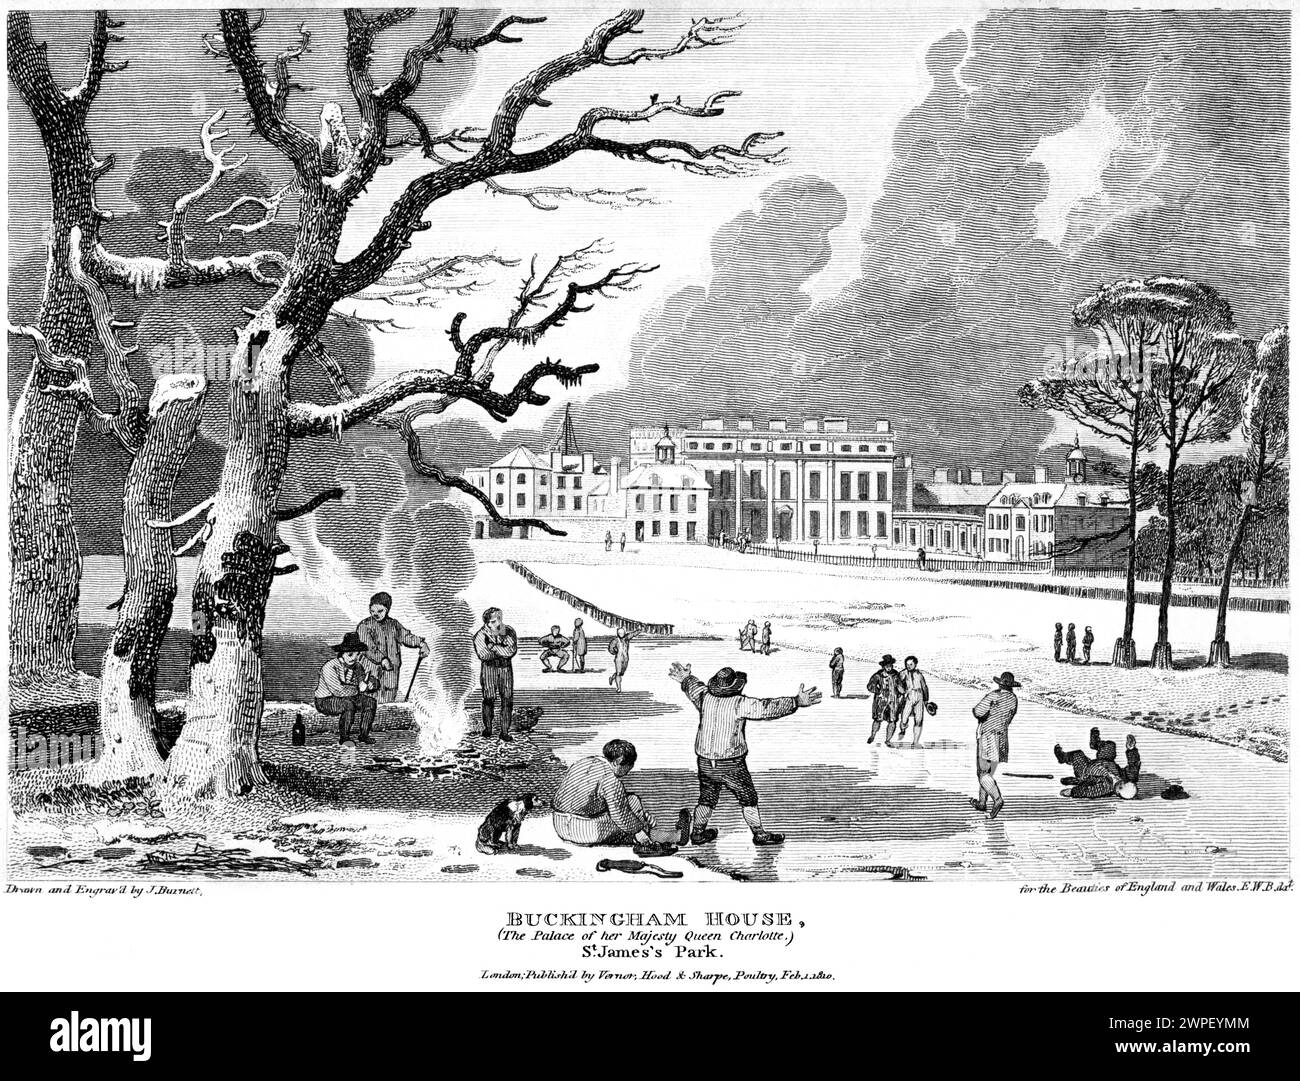 Gravur mit dem Titel Buckingham House (The Palace of her Majesty Queen Charlotte) St James Park, London, Großbritannien, scannte in hoher Auflösung ein Buch von 1815. Stockfoto